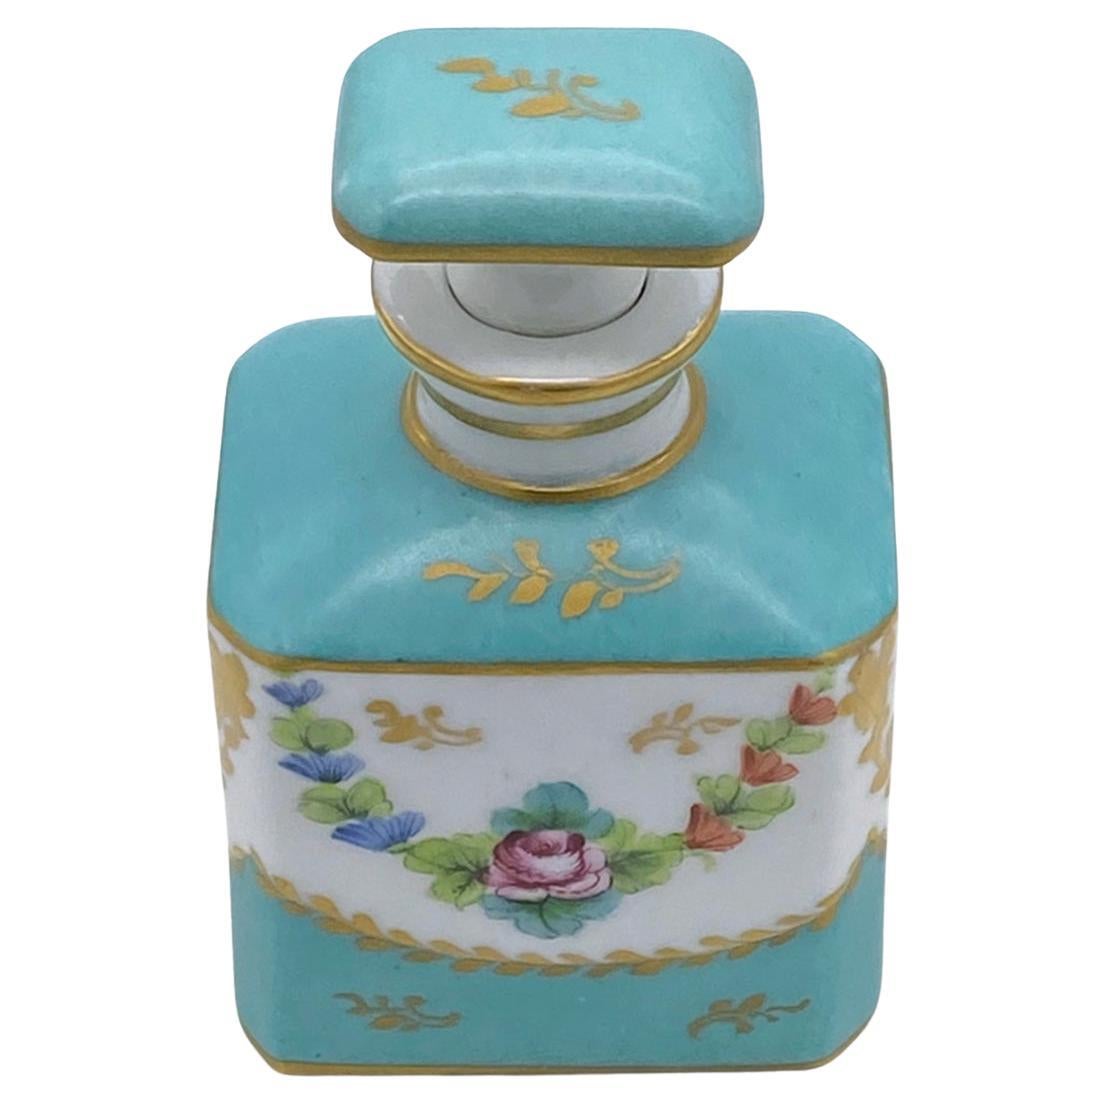 Dies ist ein Limoges Hand dekoriert Parfüm Flasche mit Stopfen. Diese türkisblaue Flasche auf weißem Hintergrund mit goldenen Strichen ist außerdem mit Rosen und Girlanden auf Vorder- und Rückseite verziert. Diese Porzellanflasche im französischen